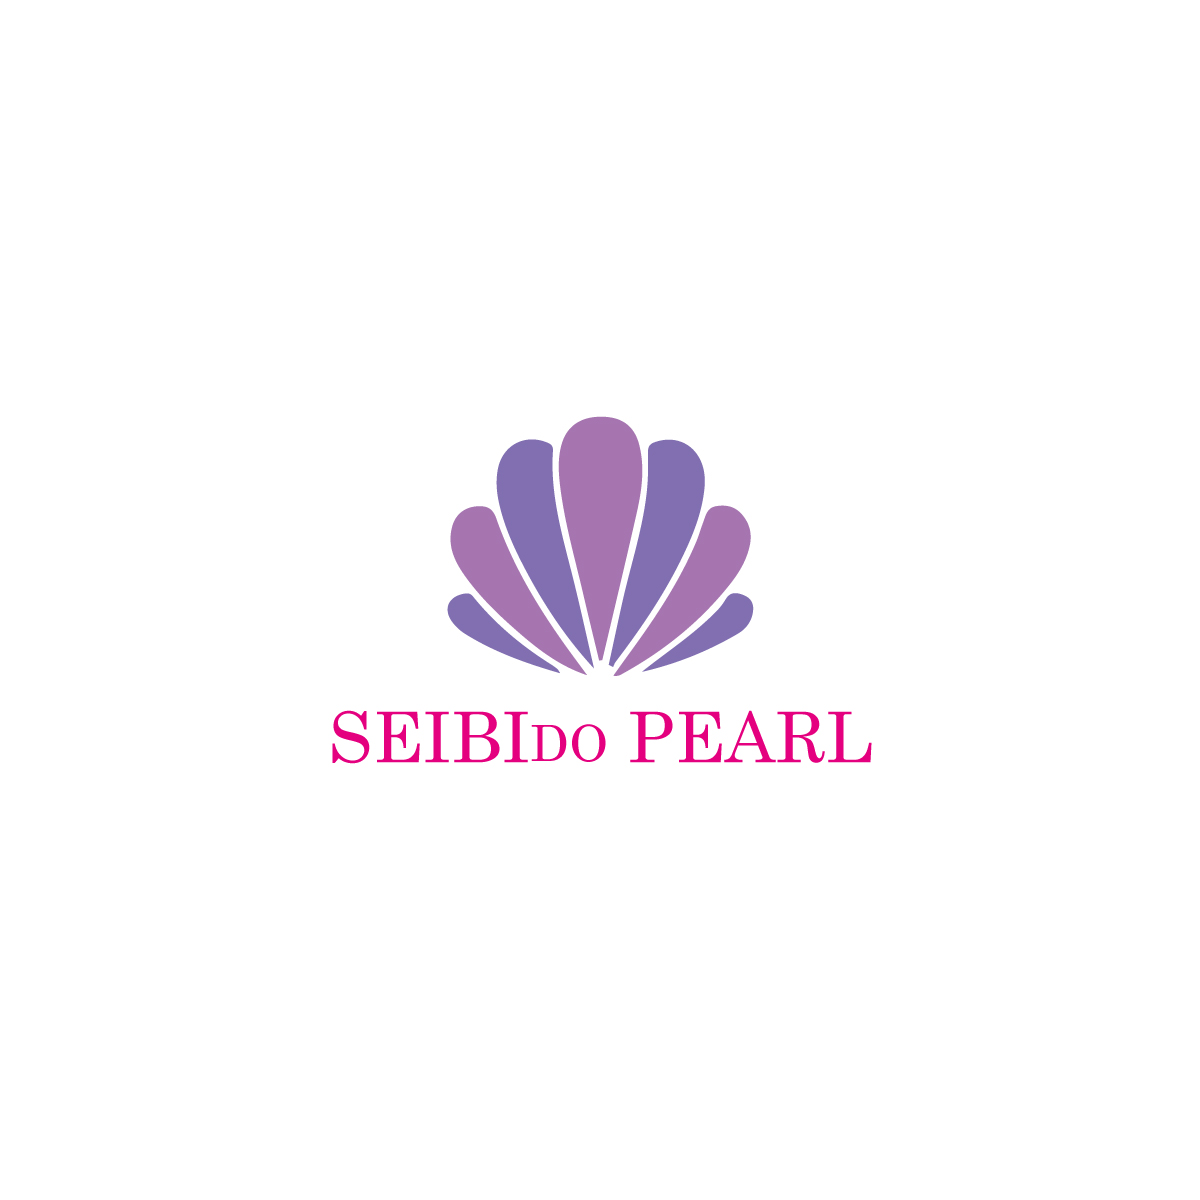 パールジュエリー専門店「SEIBIDO PEARL」のロゴ